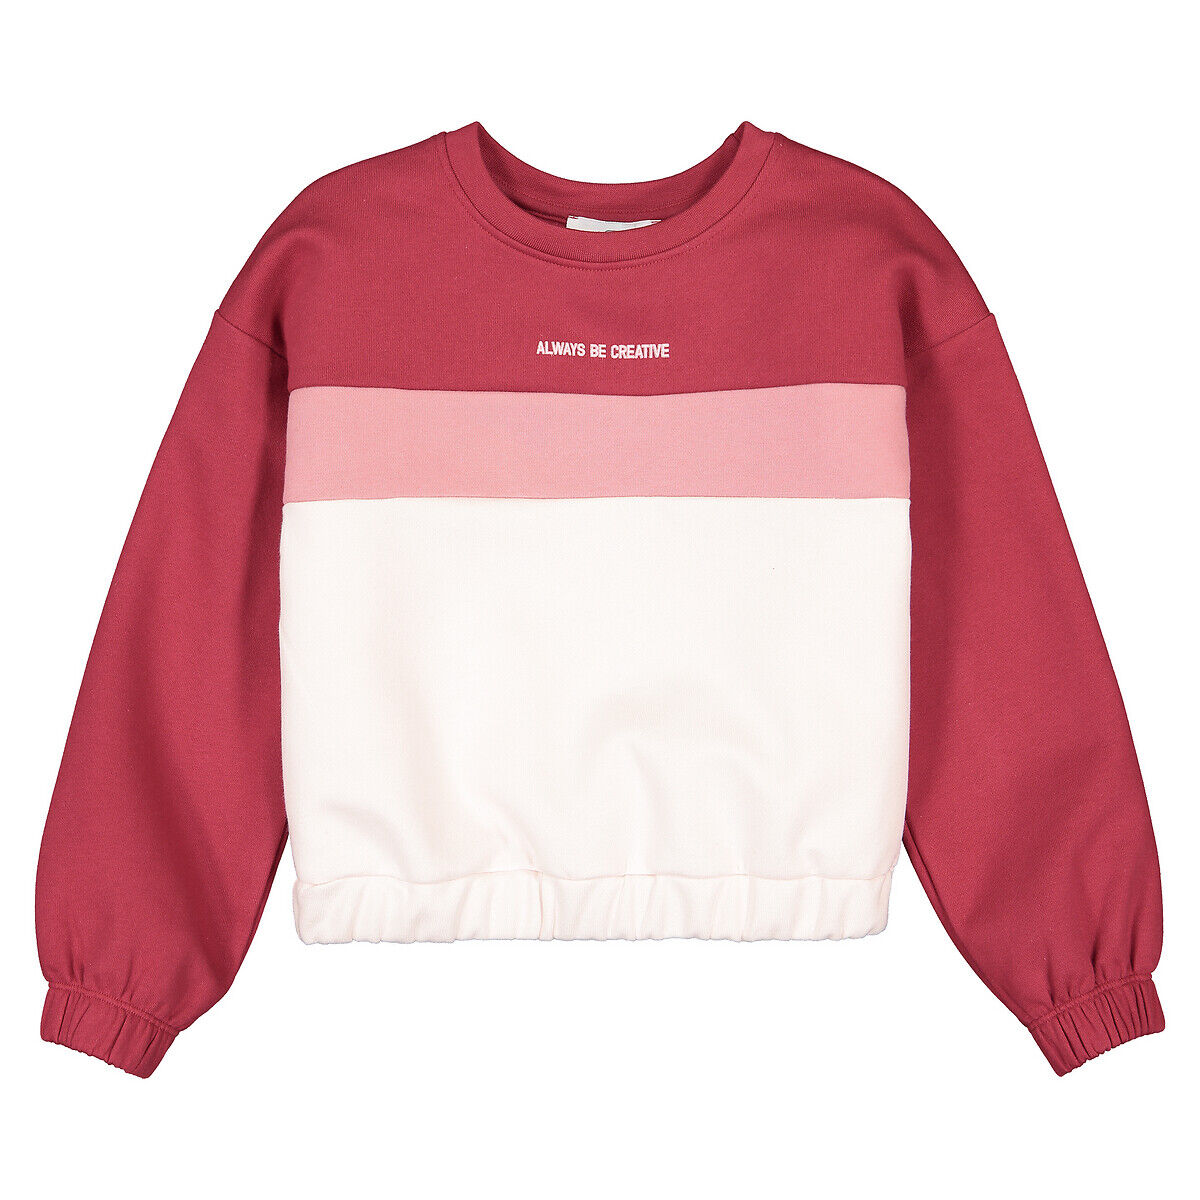 LA REDOUTE COLLECTIONS Sweatshirt, runder Ausschnitt, dreifarbig, 3-14 Jahre ROSA